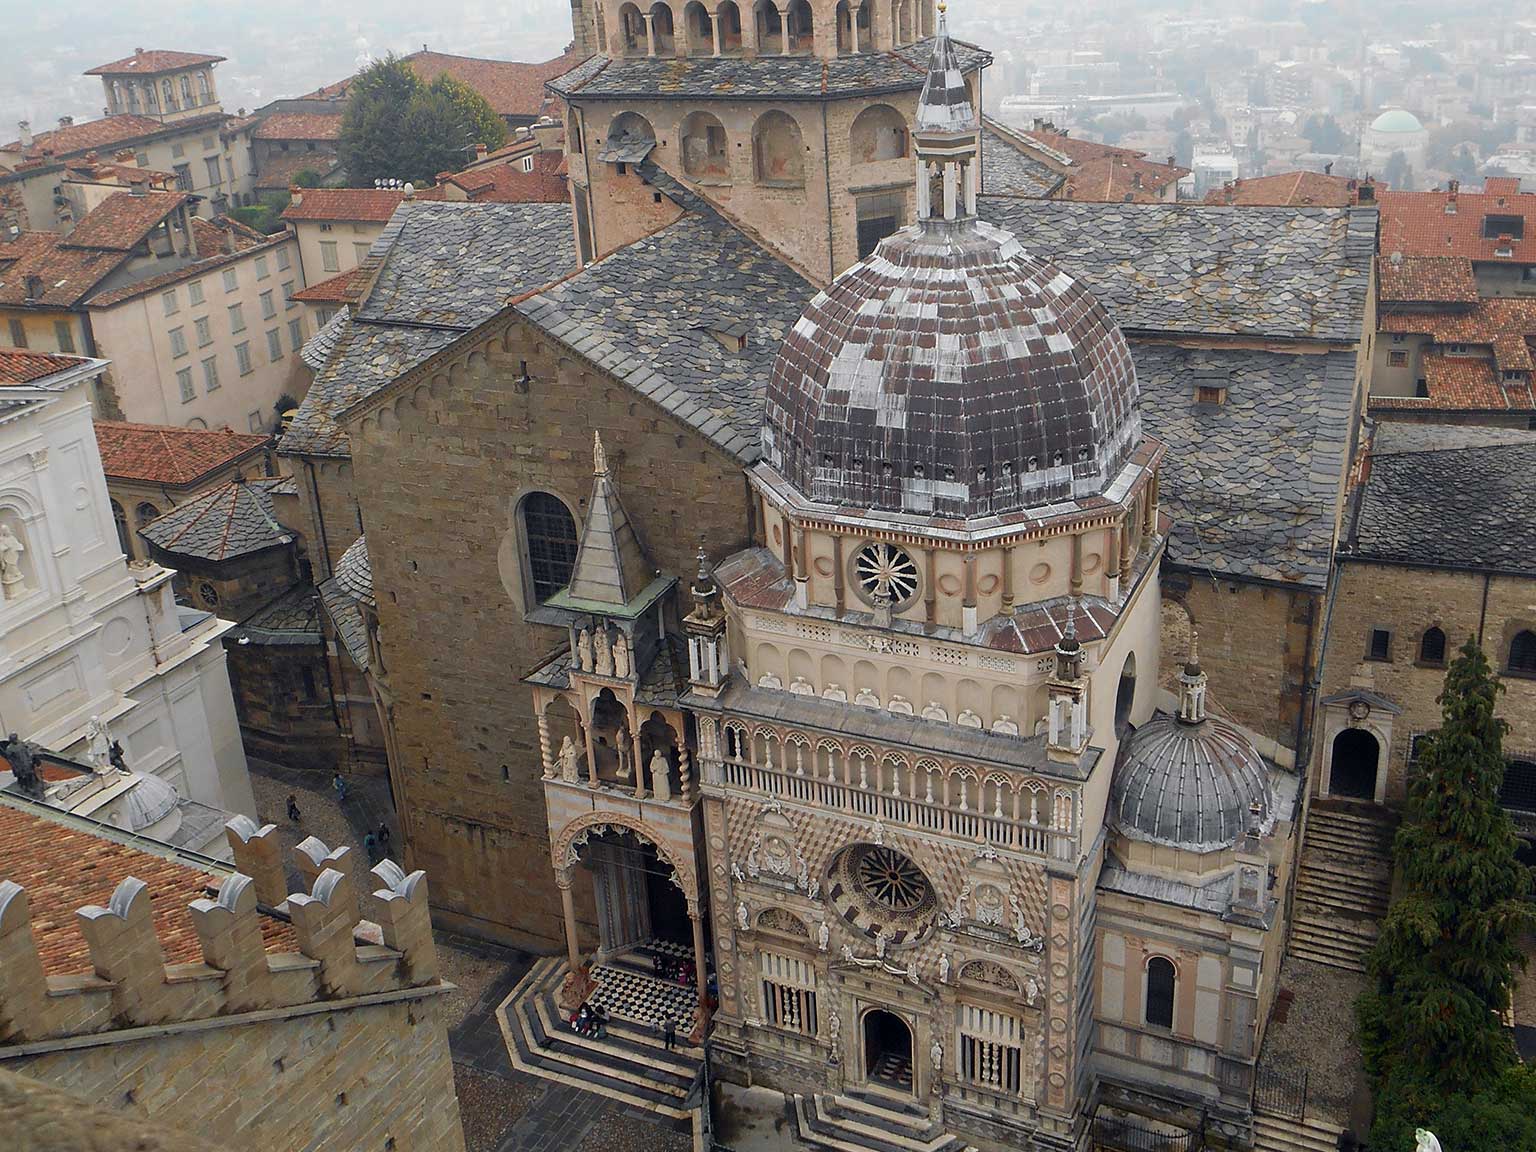 Church of Santa Maria Maggiore in Bergamo, Italy